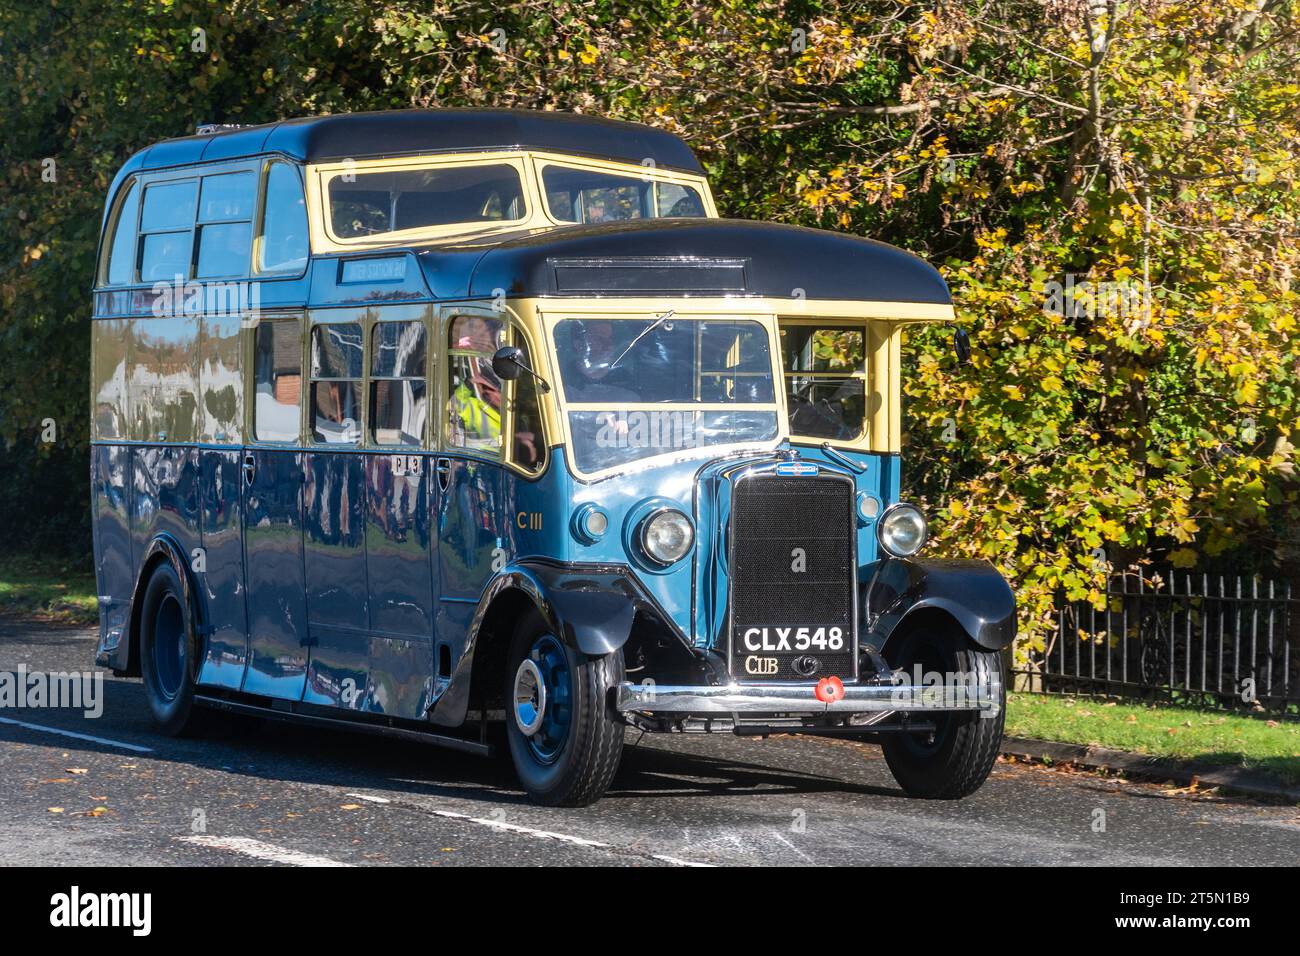 November 2023. Teilnehmer am London to Brighton Veteran Car Run 2023 durch West Sussex, England, Großbritannien. Ein alter Leyland Cub SKPZ2-Bus aus dem Jahr 1936, der der Strecke folgt. Stockfoto